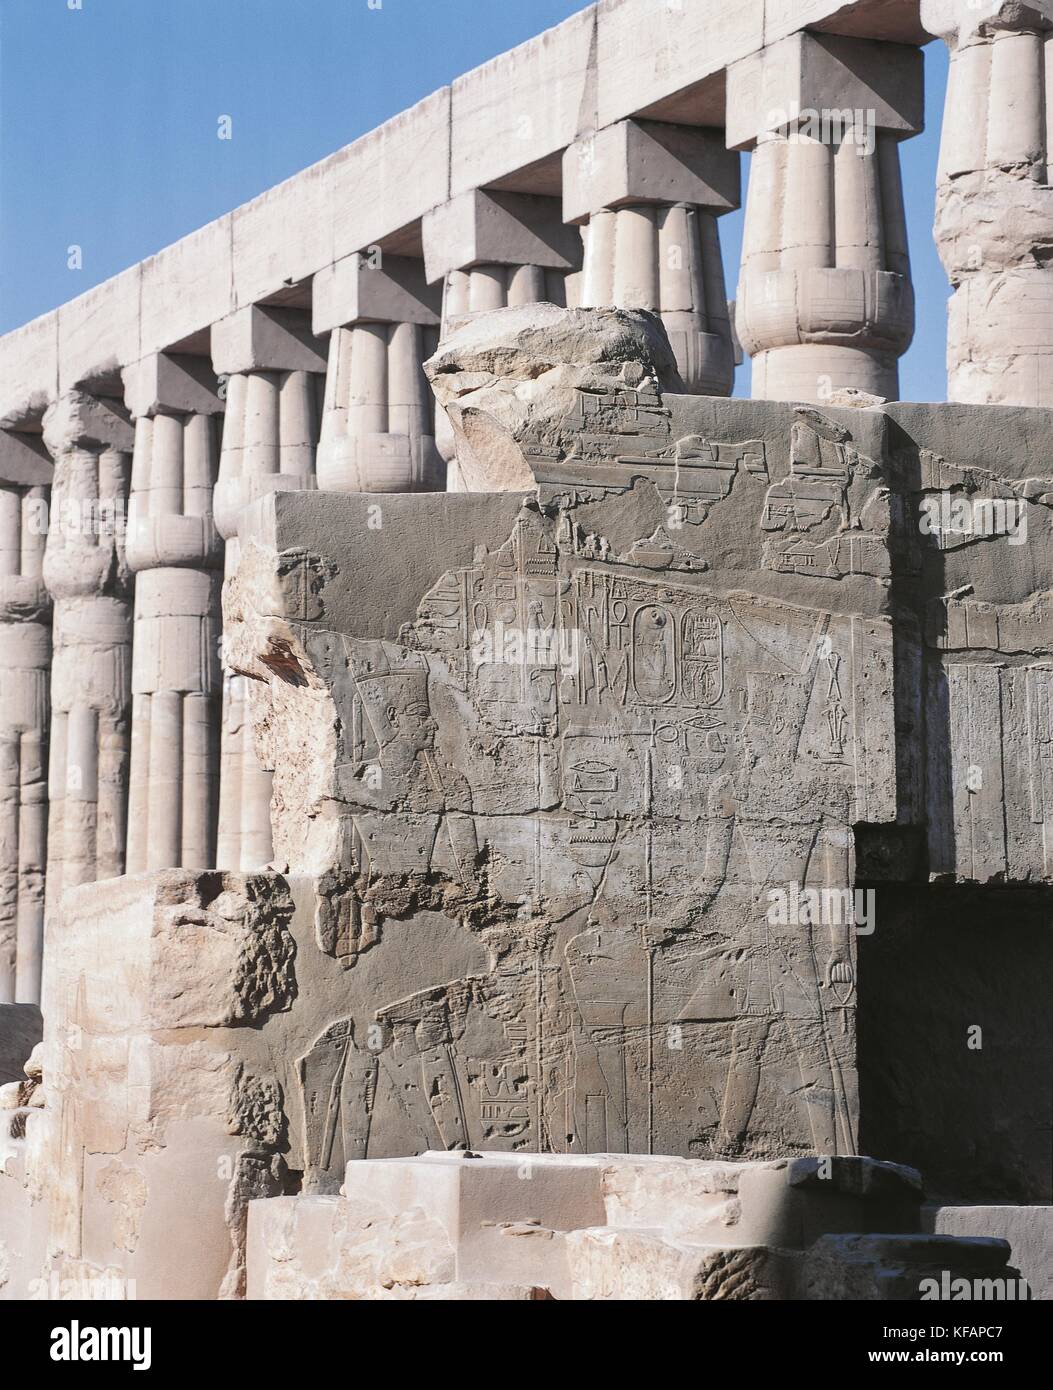 Egipto, antigua Tebas (lista de patrimonio mundial de la UNESCO, 1979). Luxor. Templo de Amón. Tribunal de Amenhotep III, 1402-1364 A.C. detalle de relieves y colonnade Foto de stock